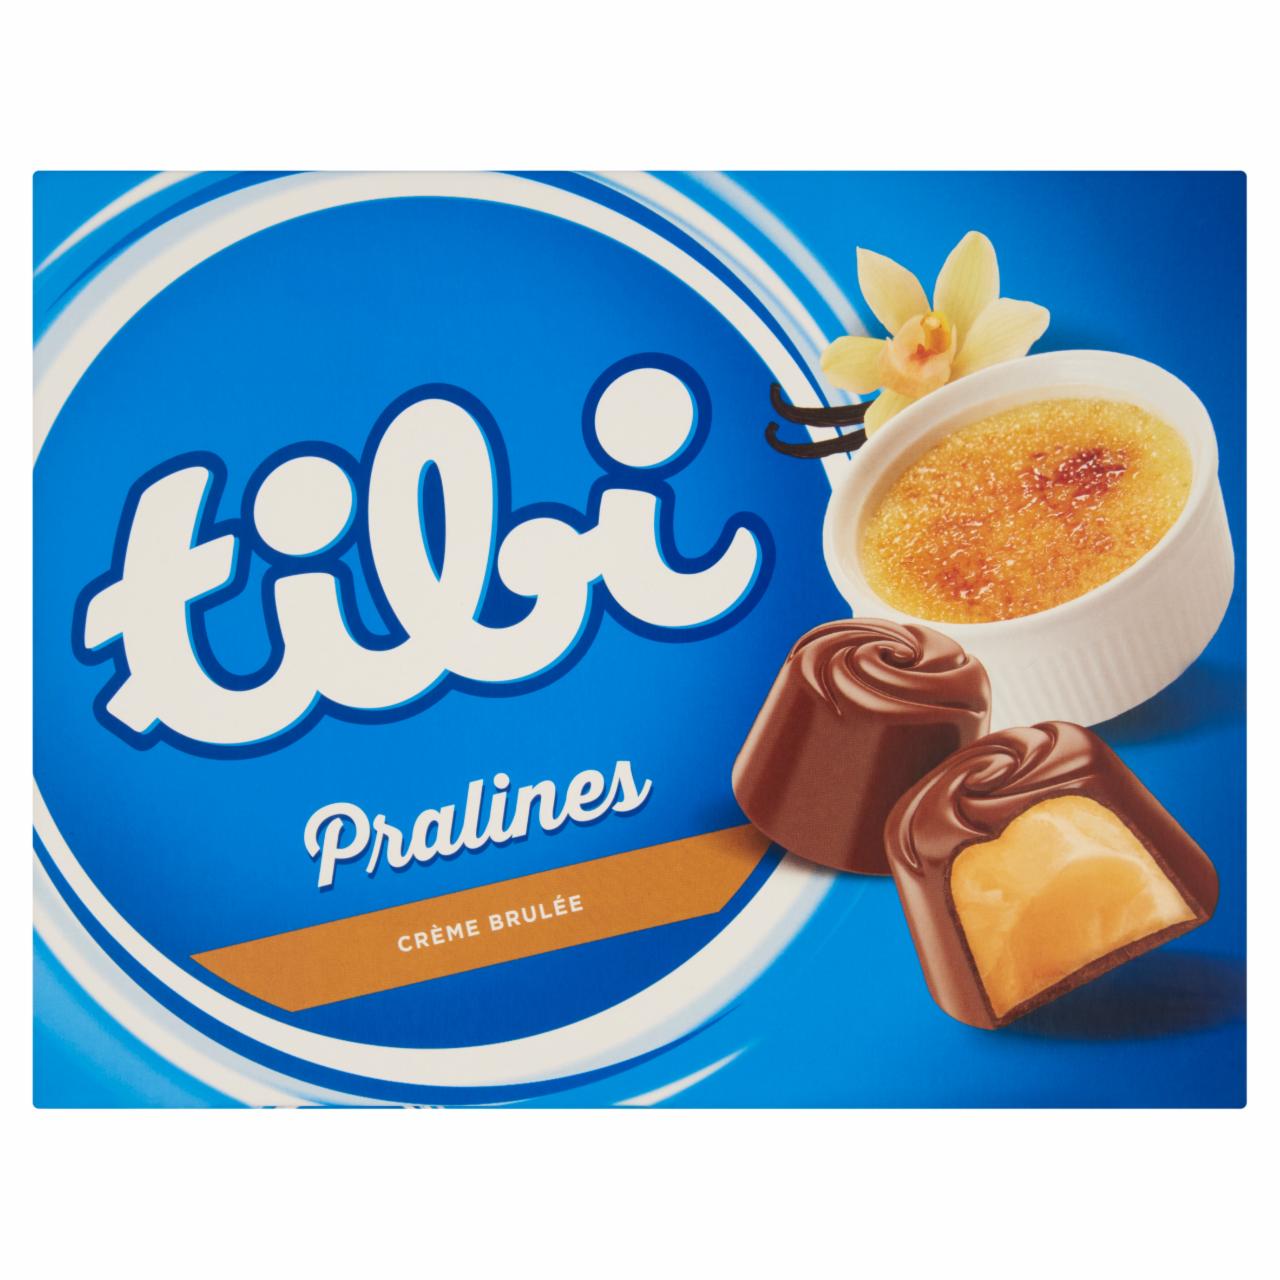 Képek - Tibi Pralines Créme brulée ízű krémmel töltött tejcsokoládés desszert 124 g